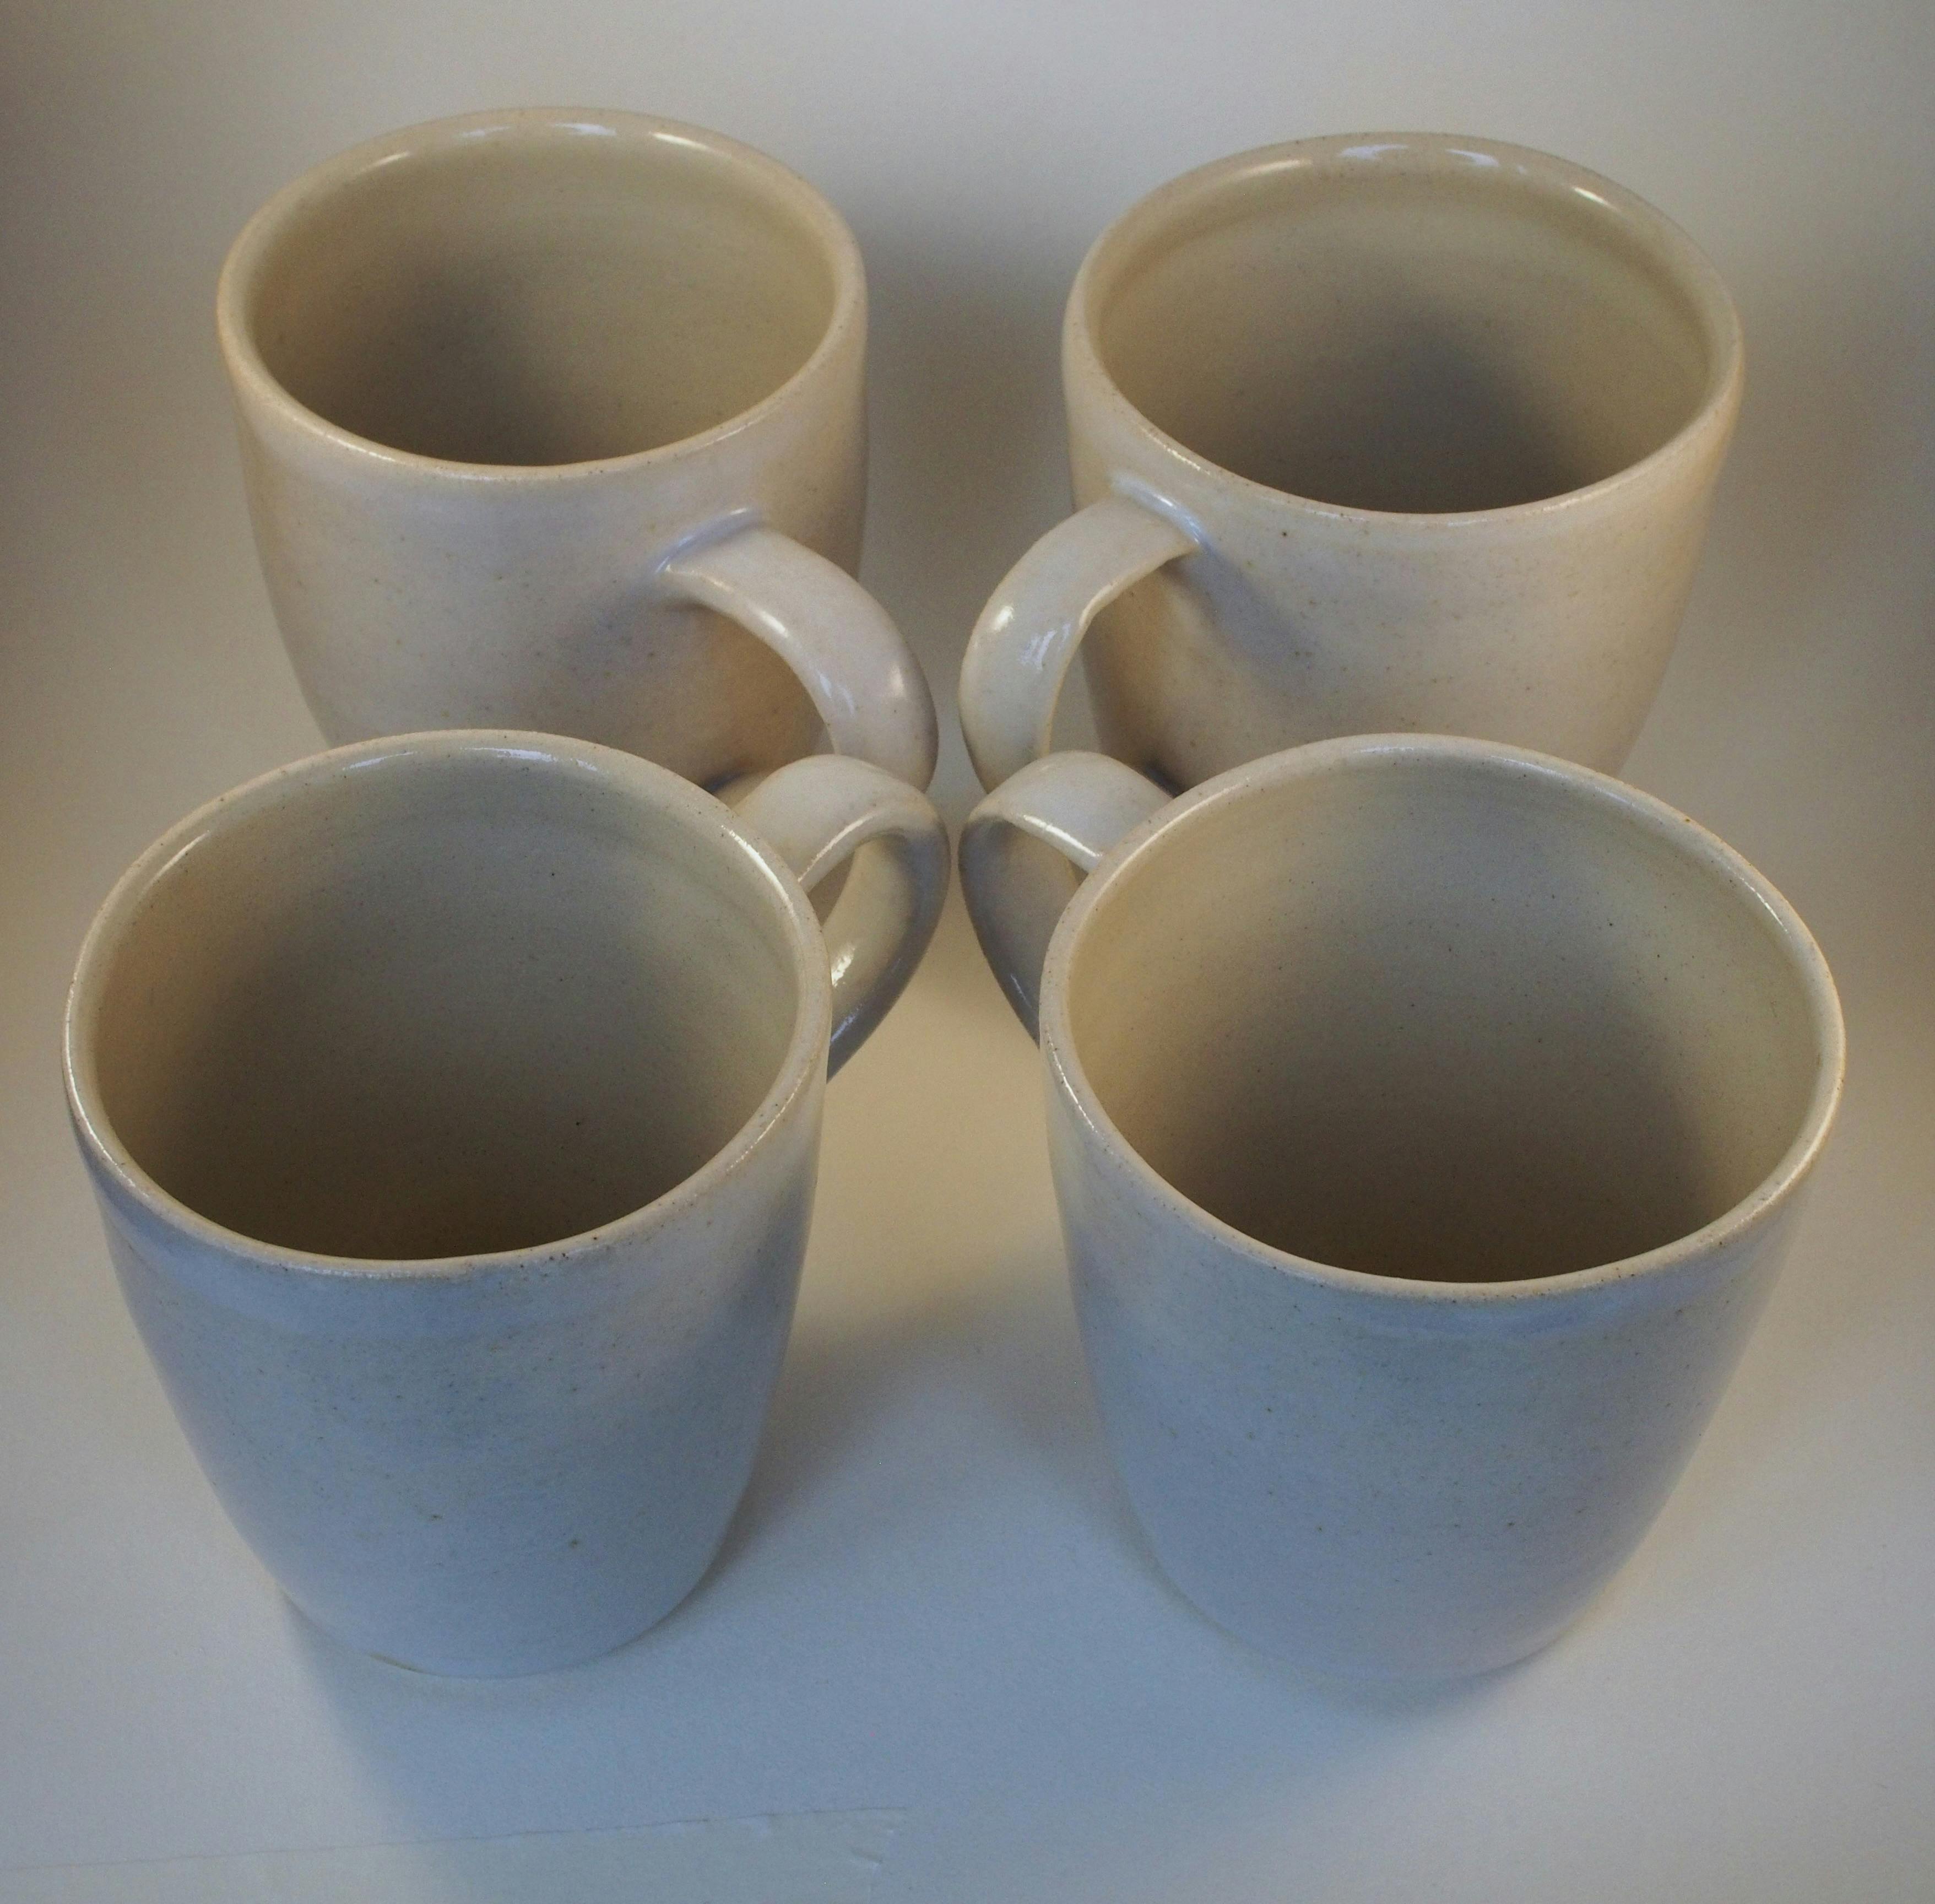 Four mugs